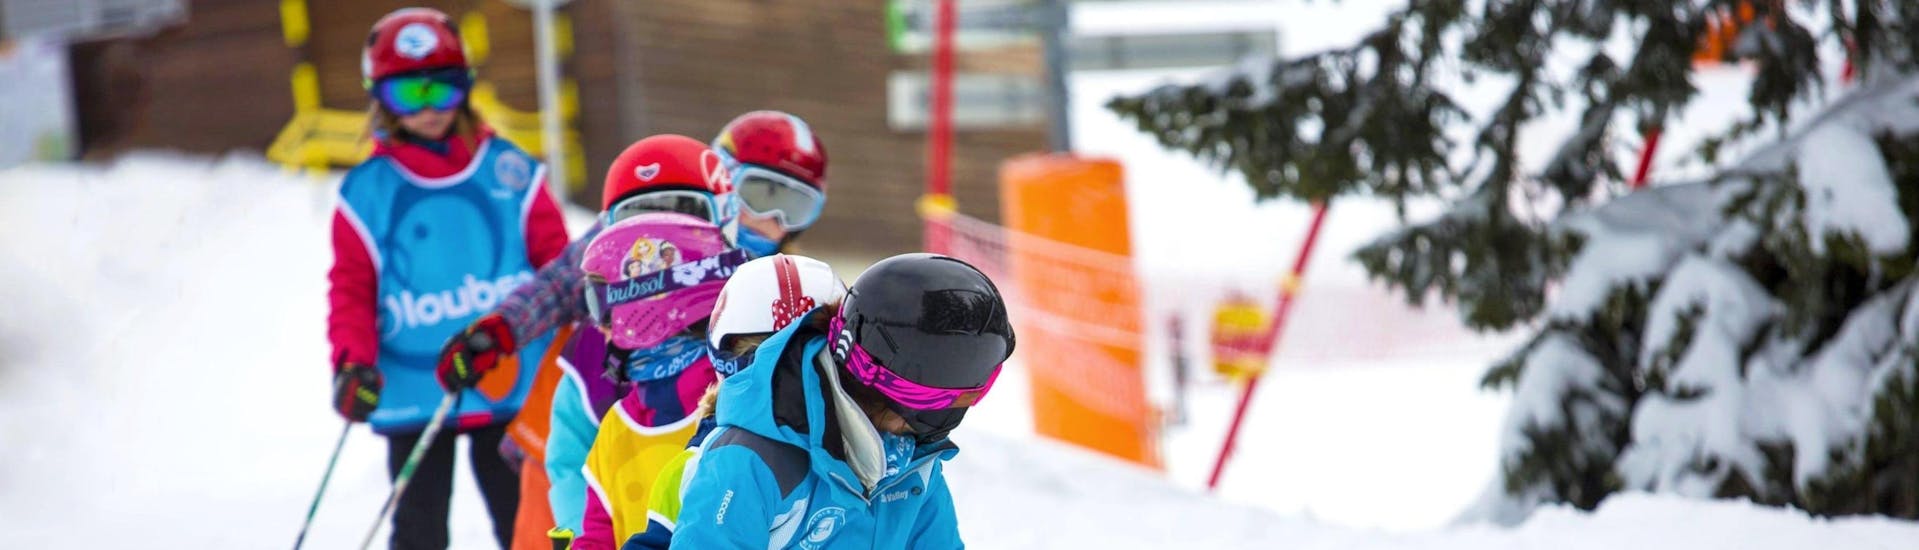 Kinder-Skikurs (6-13 J.) für Skifahrer mit Erfahrung.